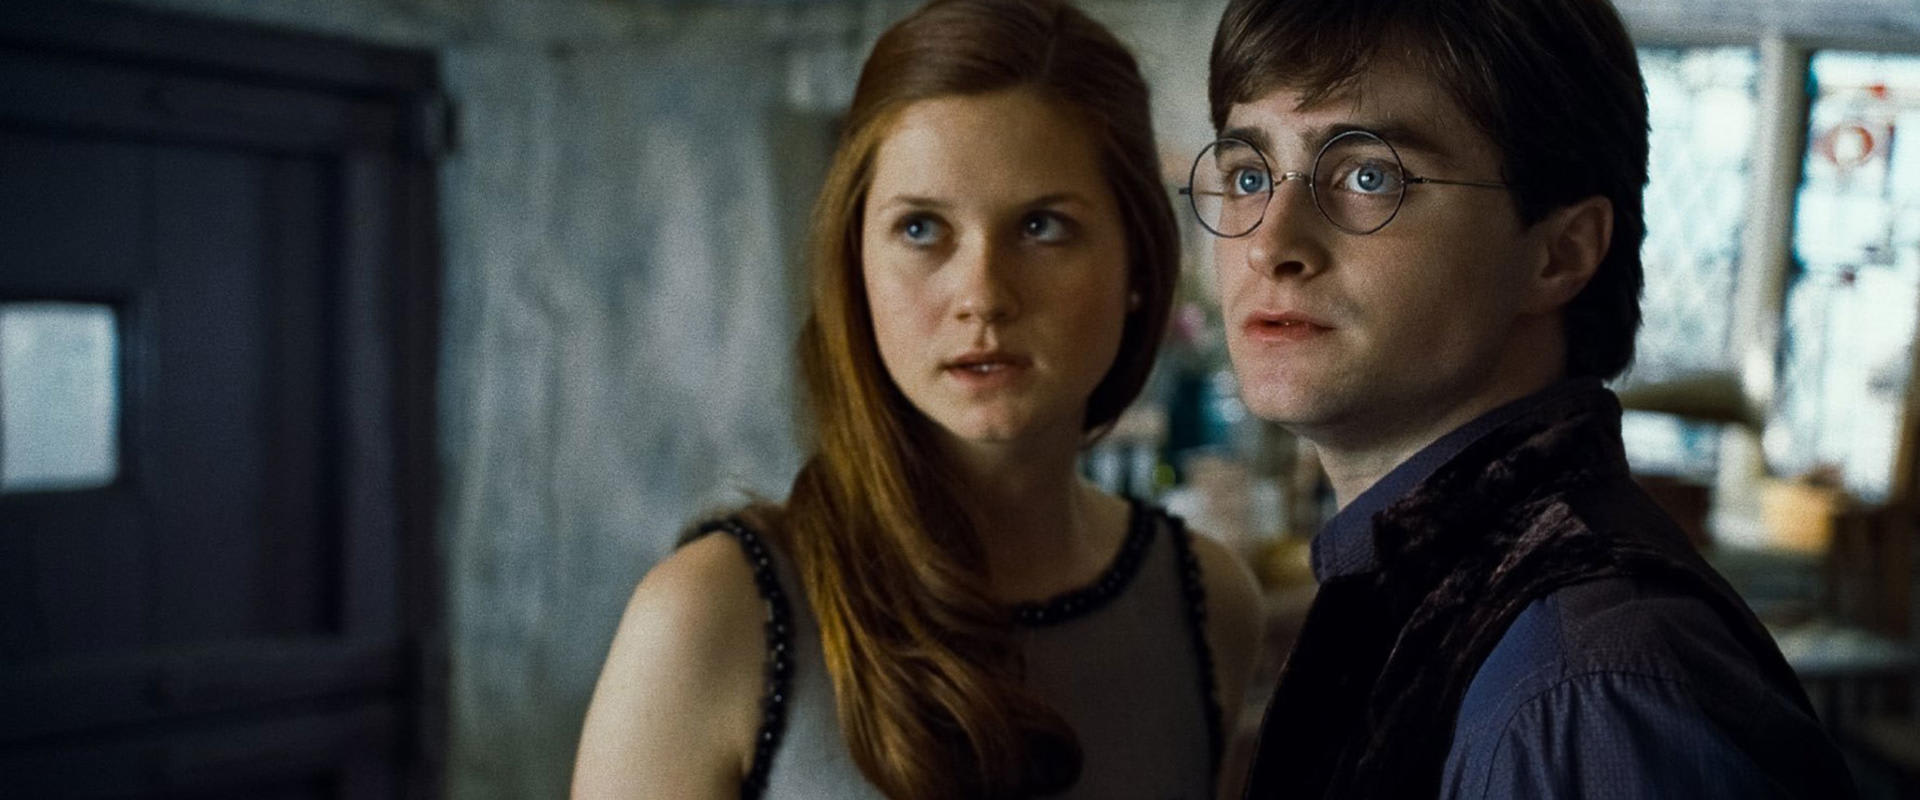 Pamatujeme si ji jako lásku Harryho Pottera, Ginny.